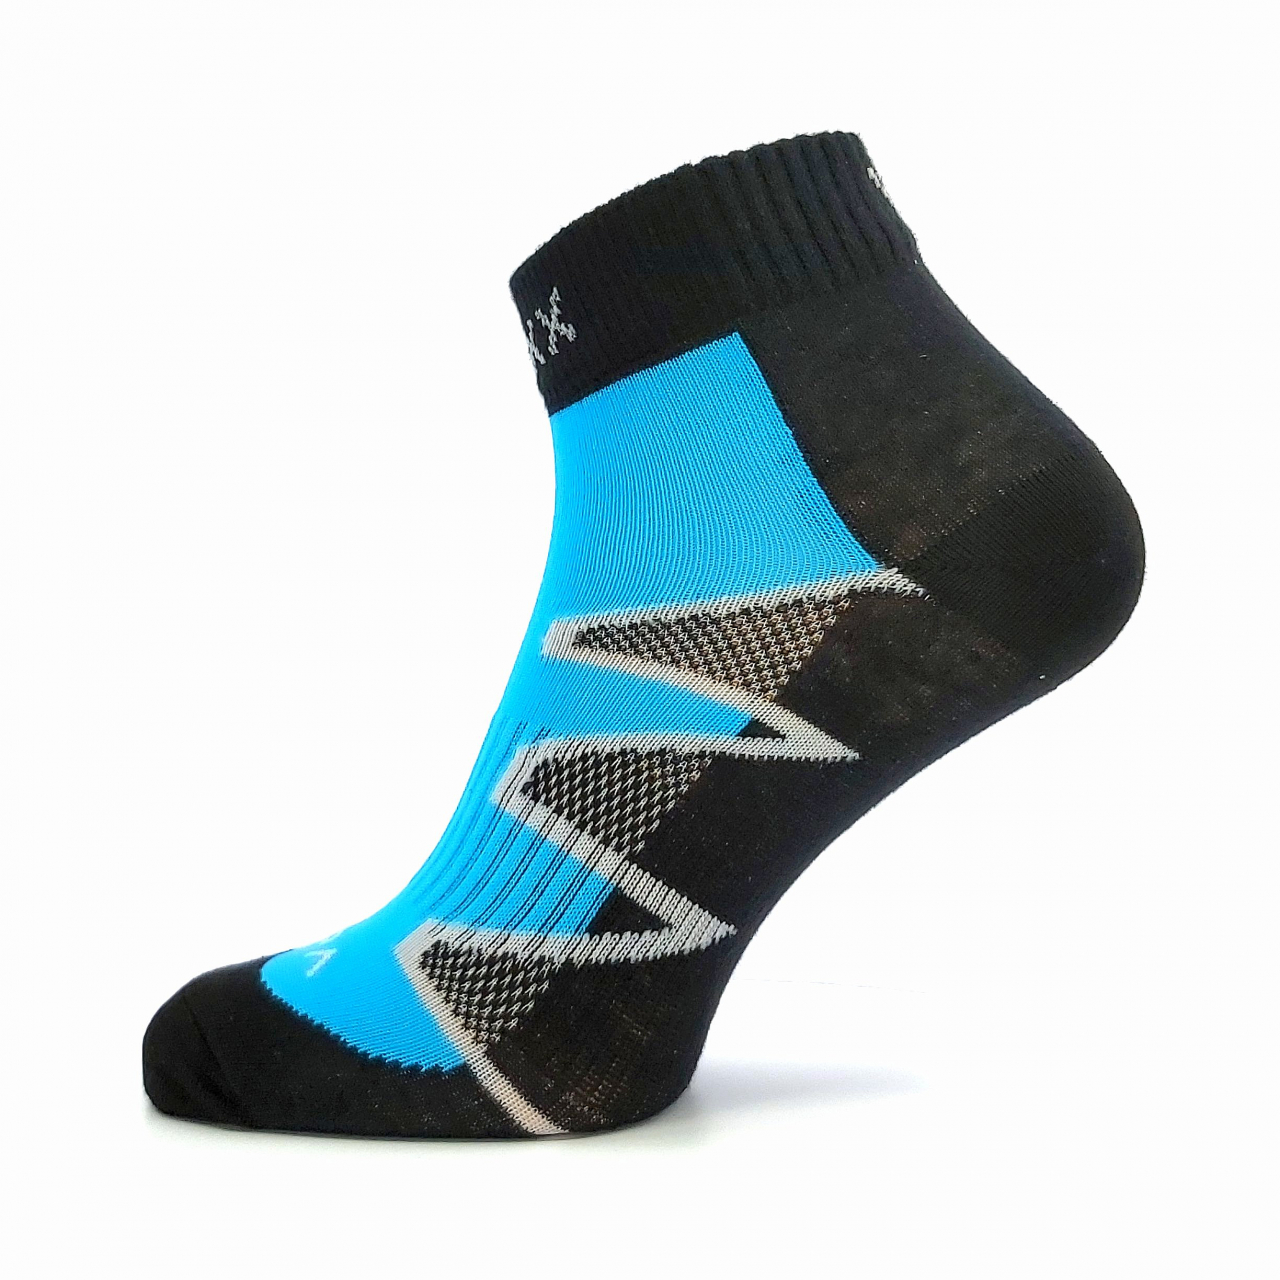 Sportovní ponožky Voxx Monsa - černé-modré, 43-46